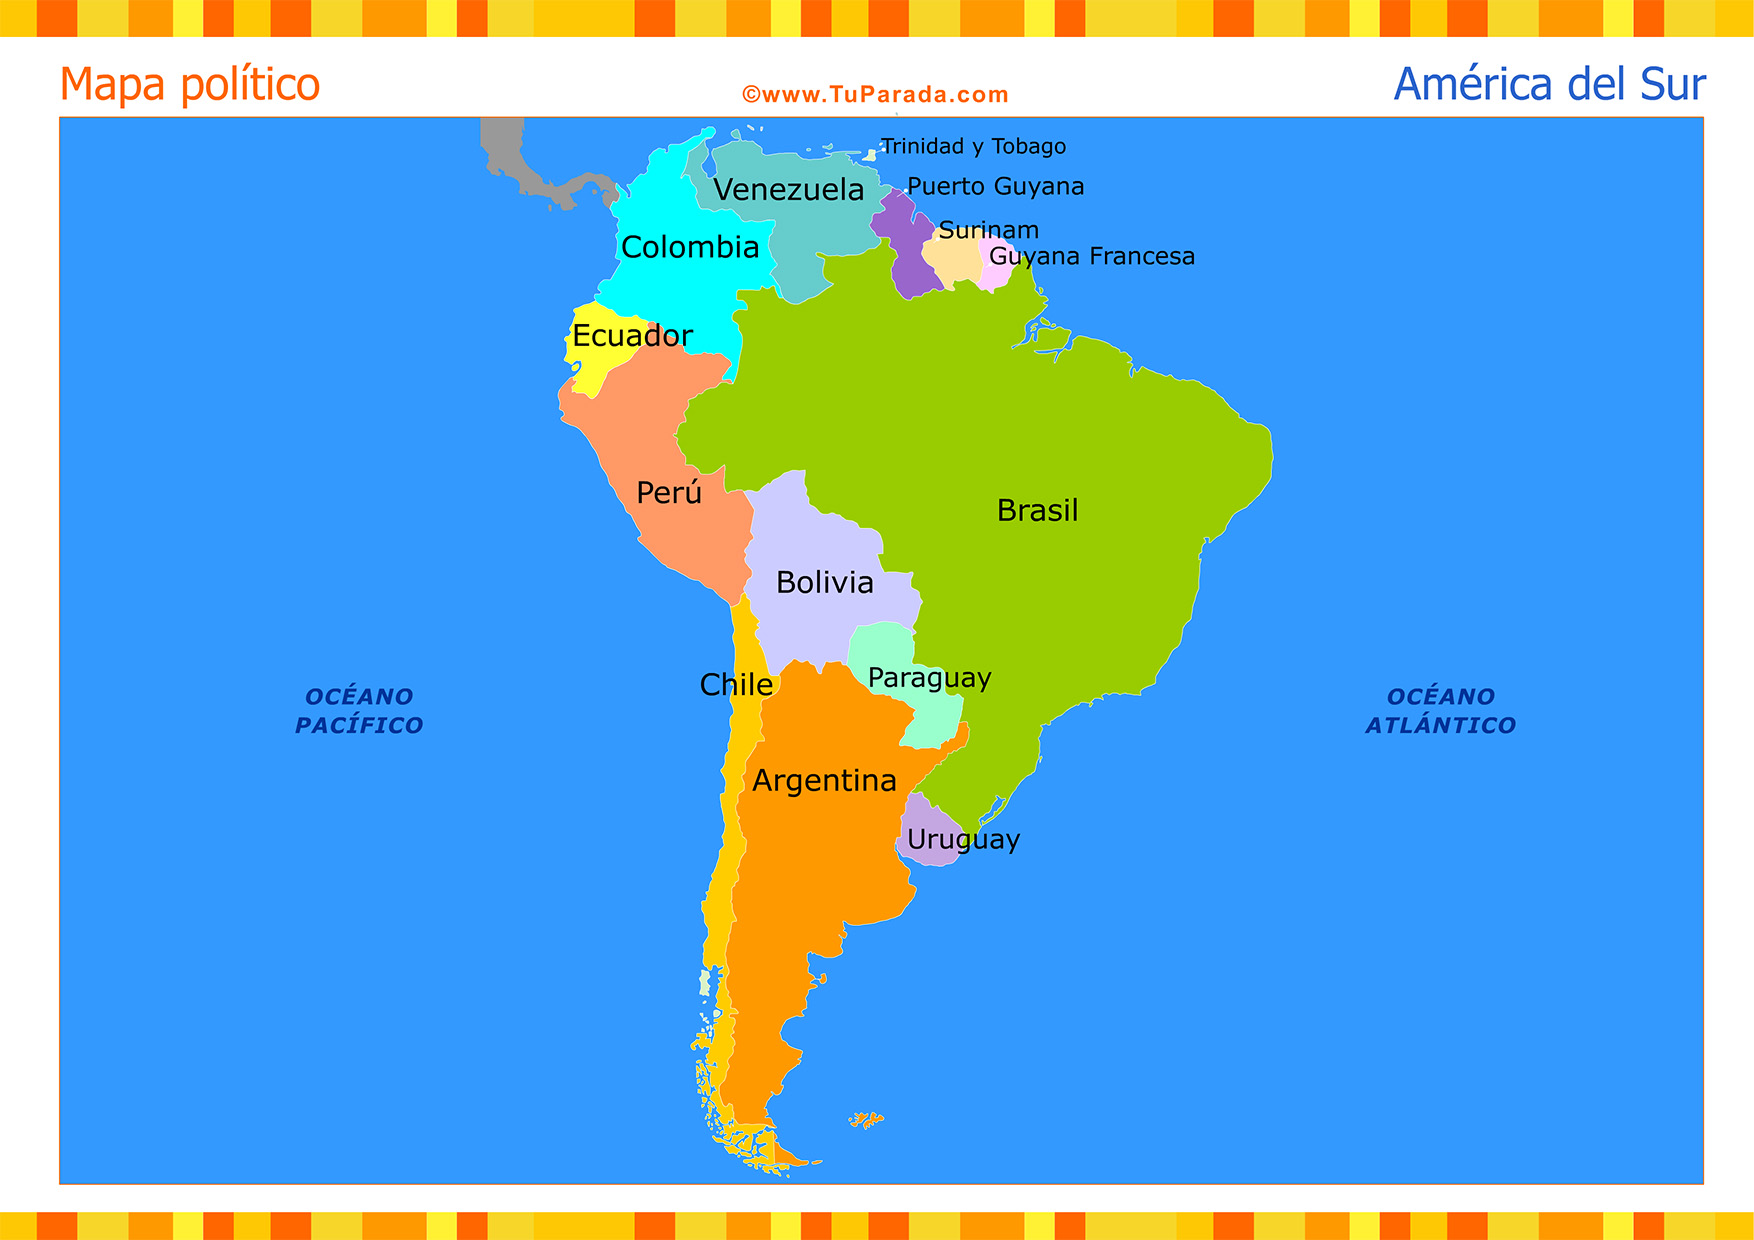 Mapa de América del Sur político, Mapas, tarjetas